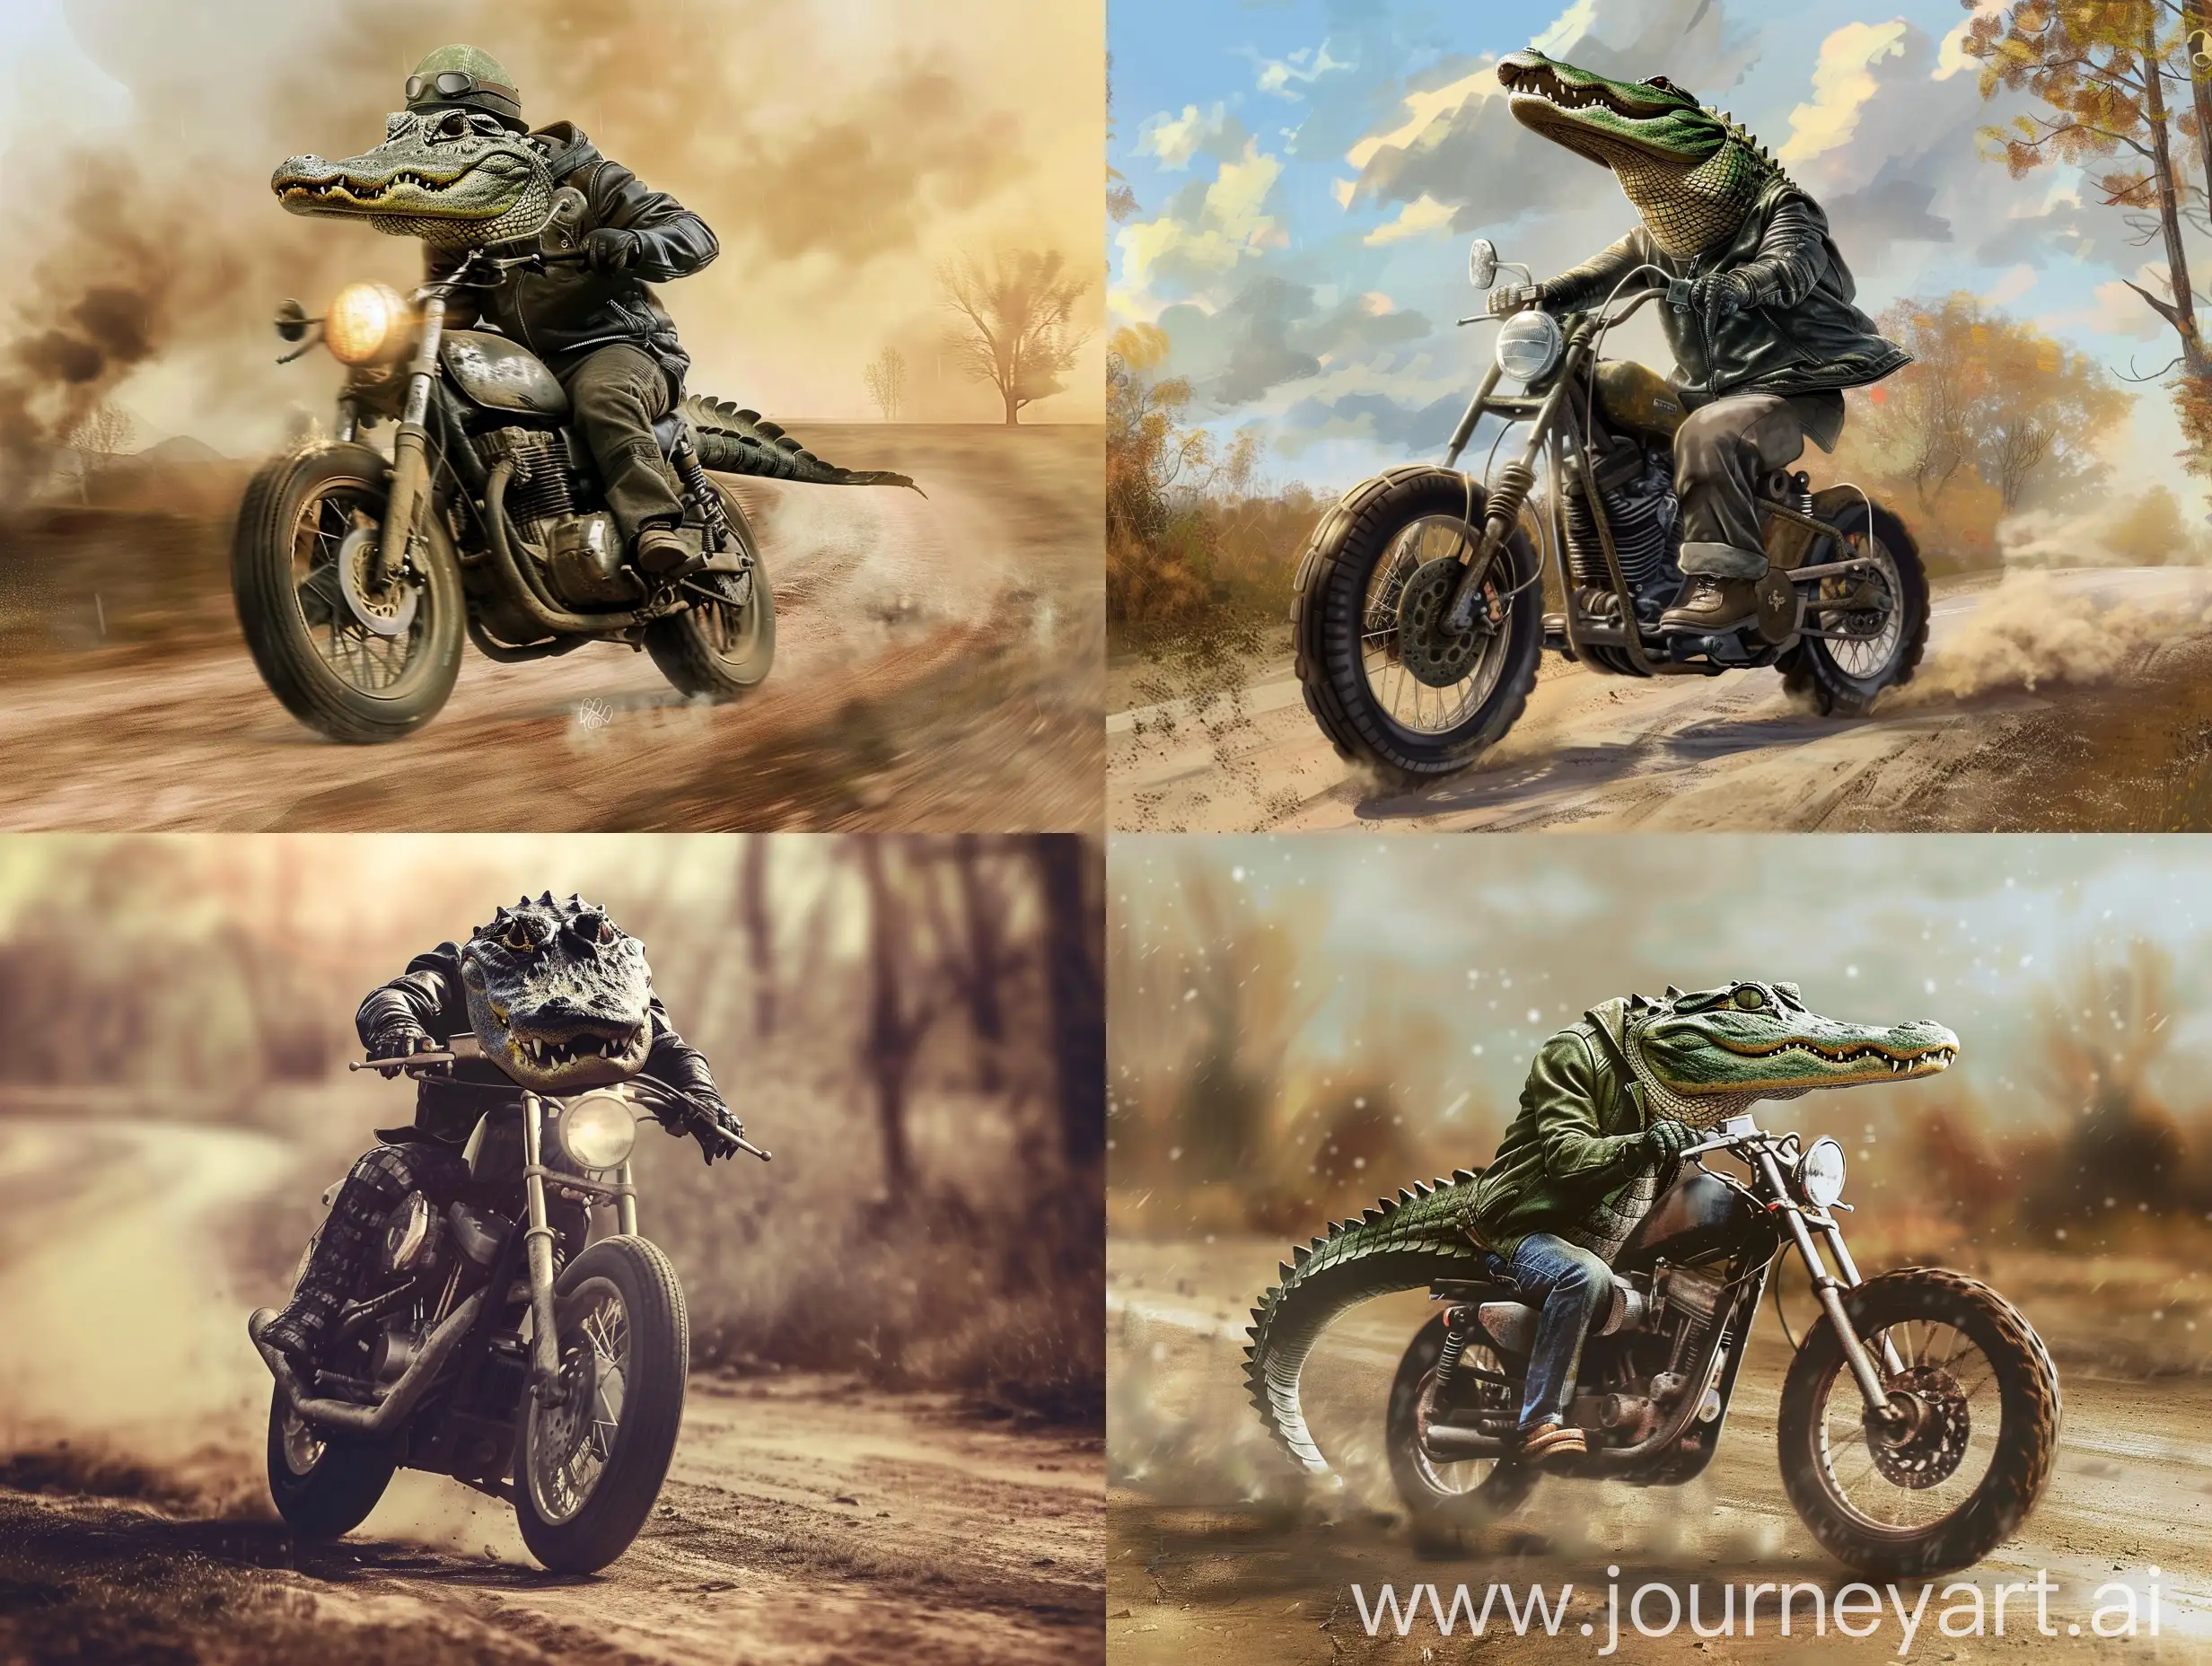 一只穿着皮夹克的鳄鱼骑着摩托车在土路上行驶 